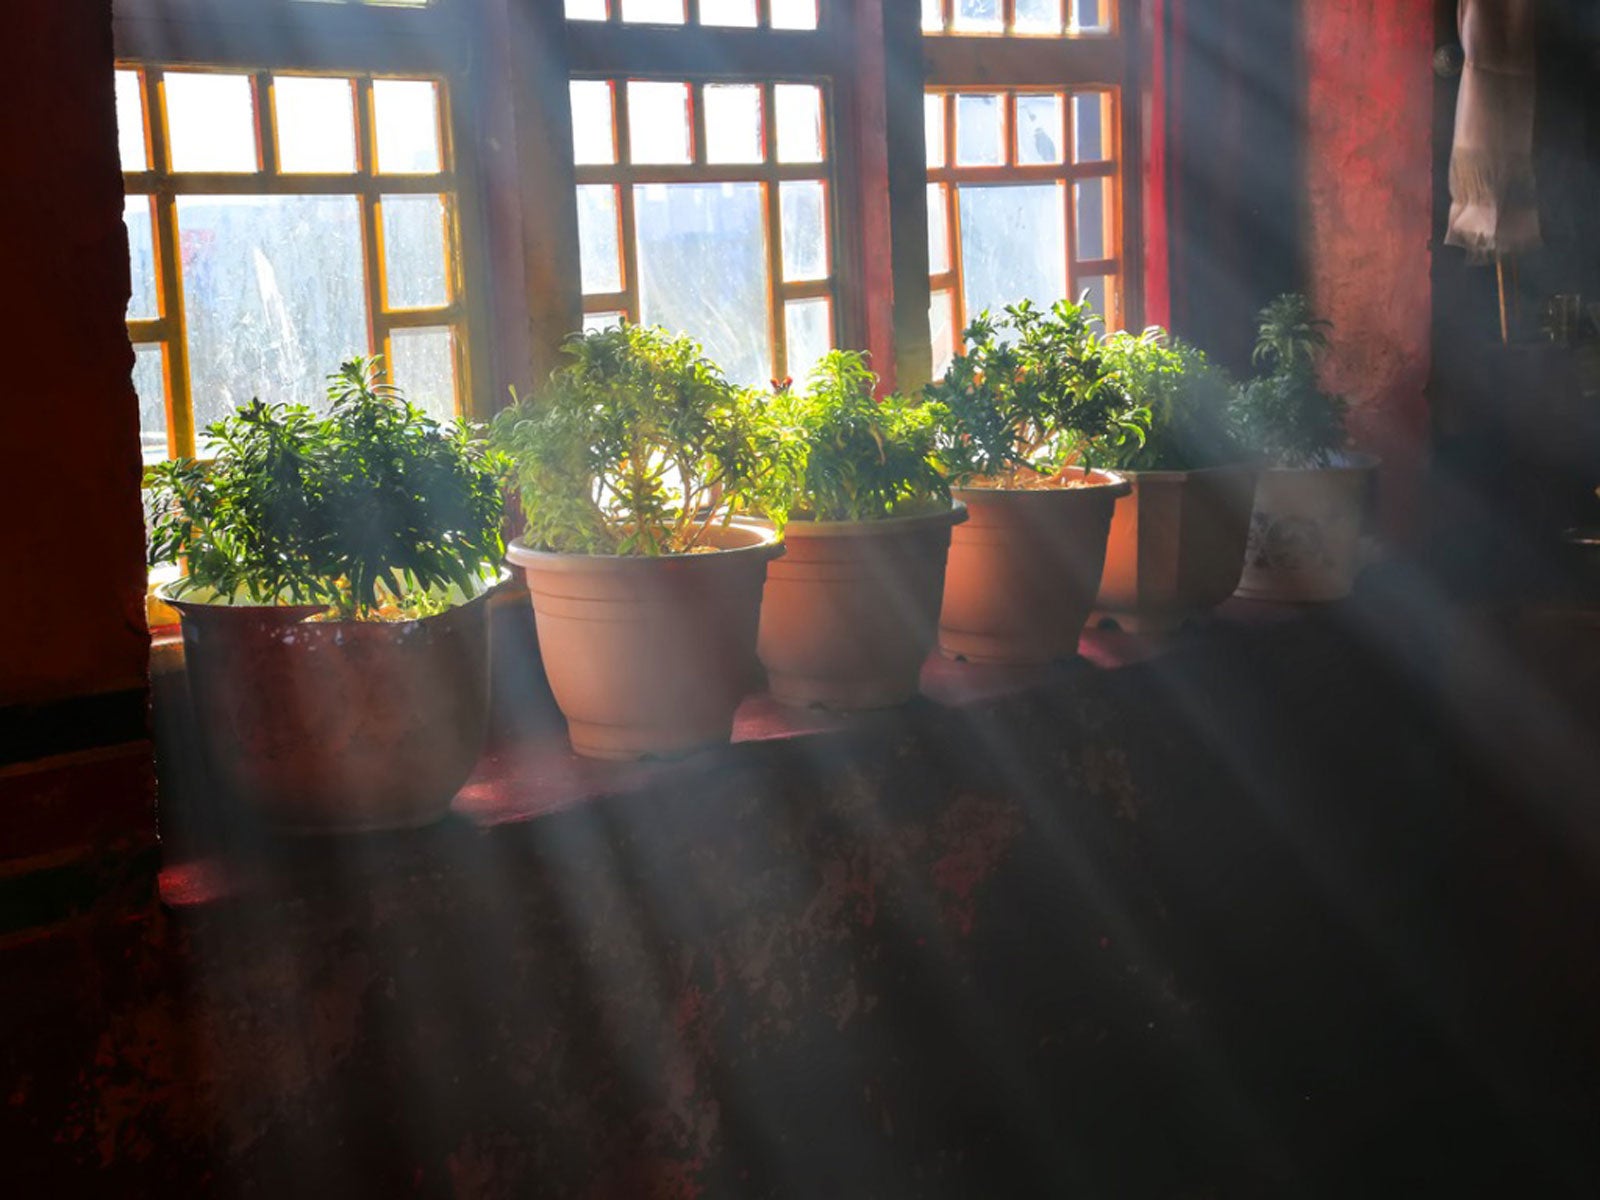 ¿Las plantas reciben suficiente luz en el interior?